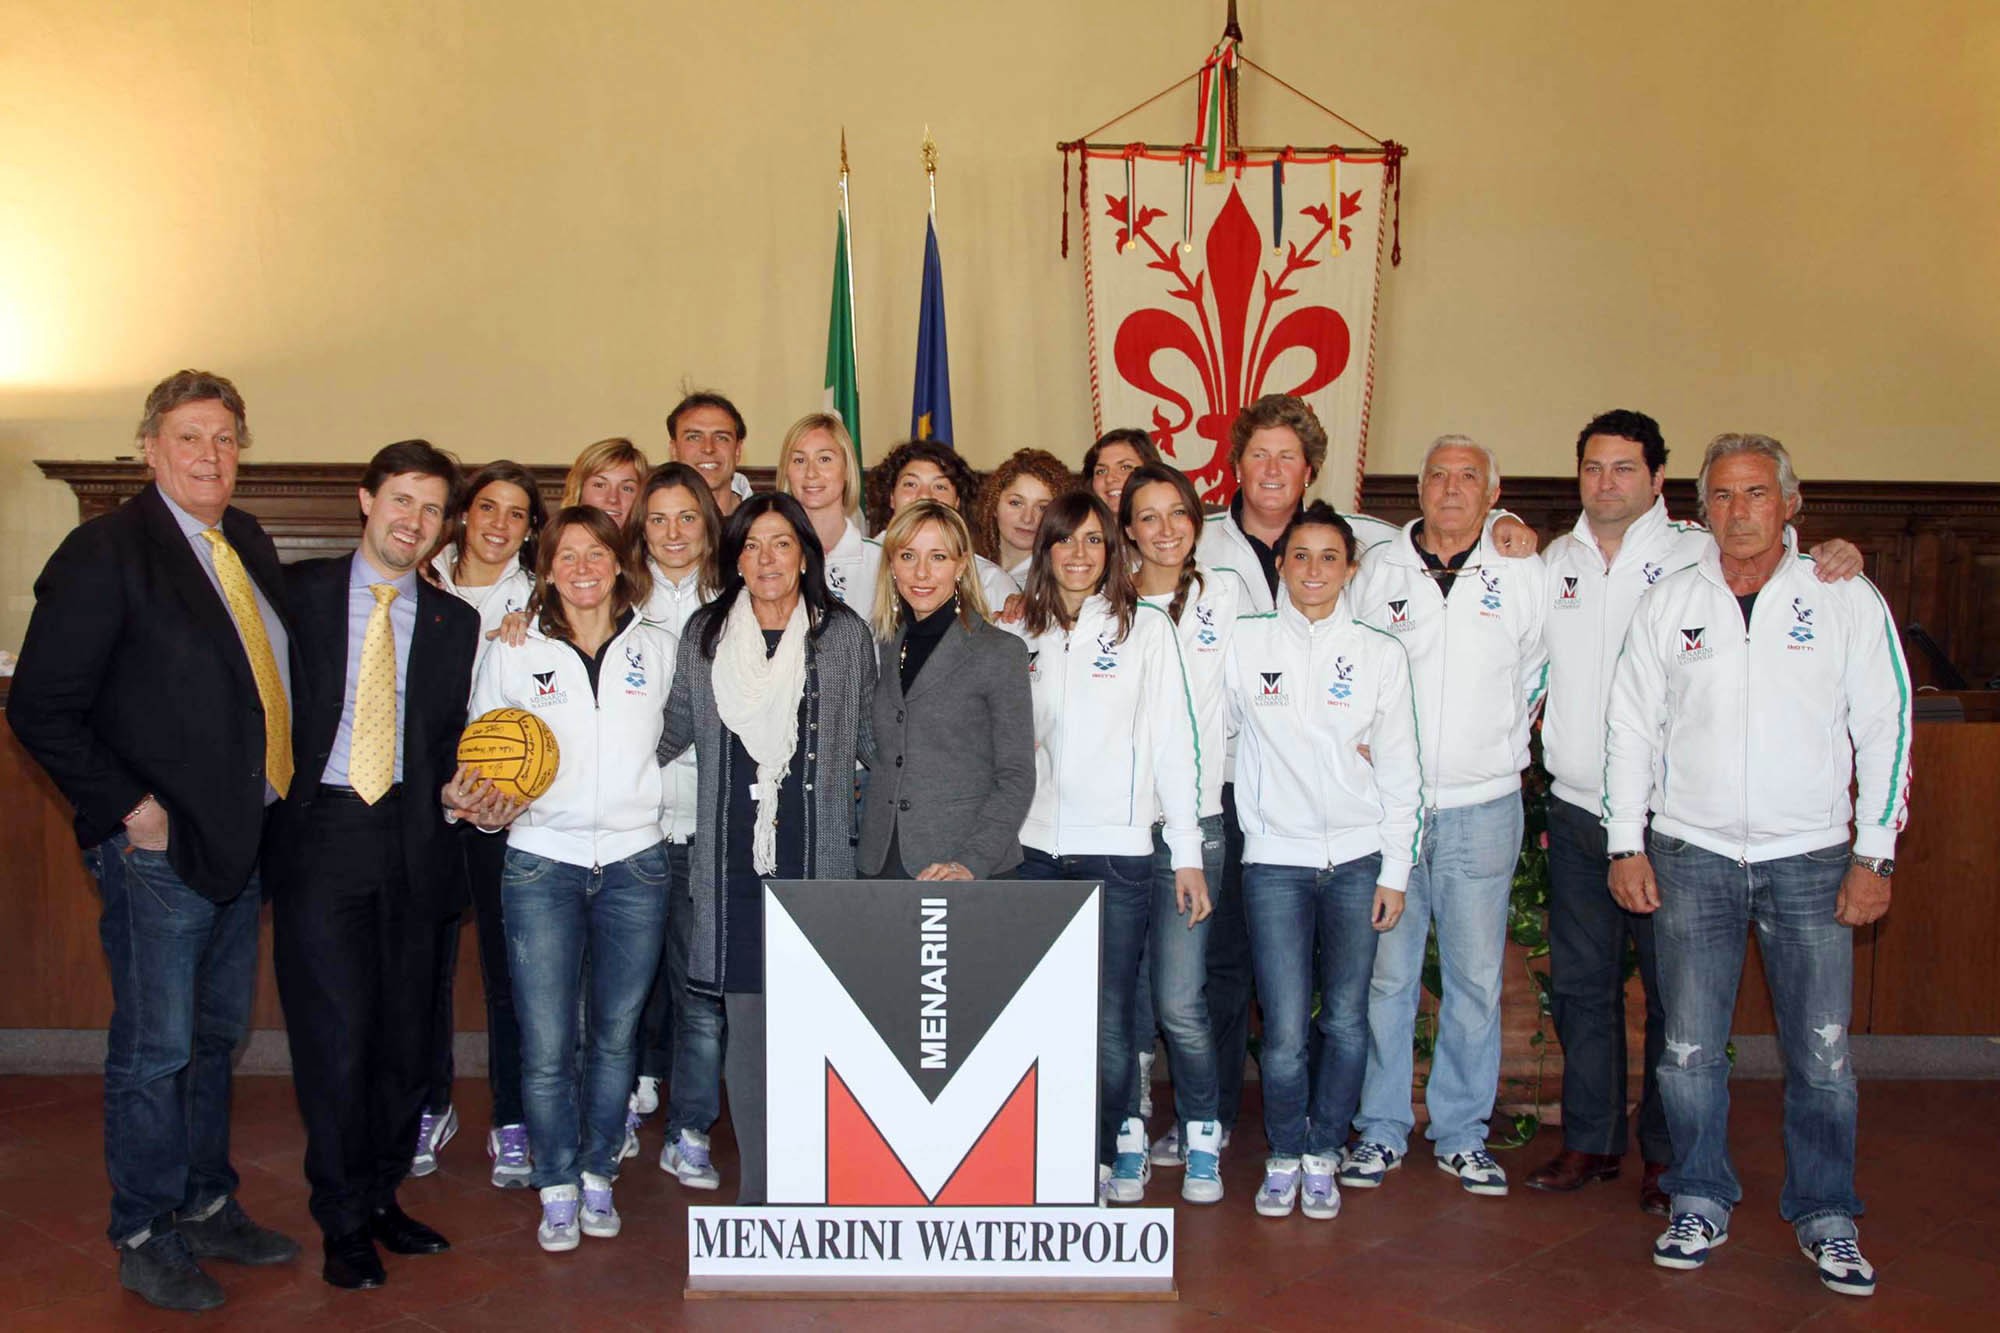 La Menarini Fiorentina Waterpolo